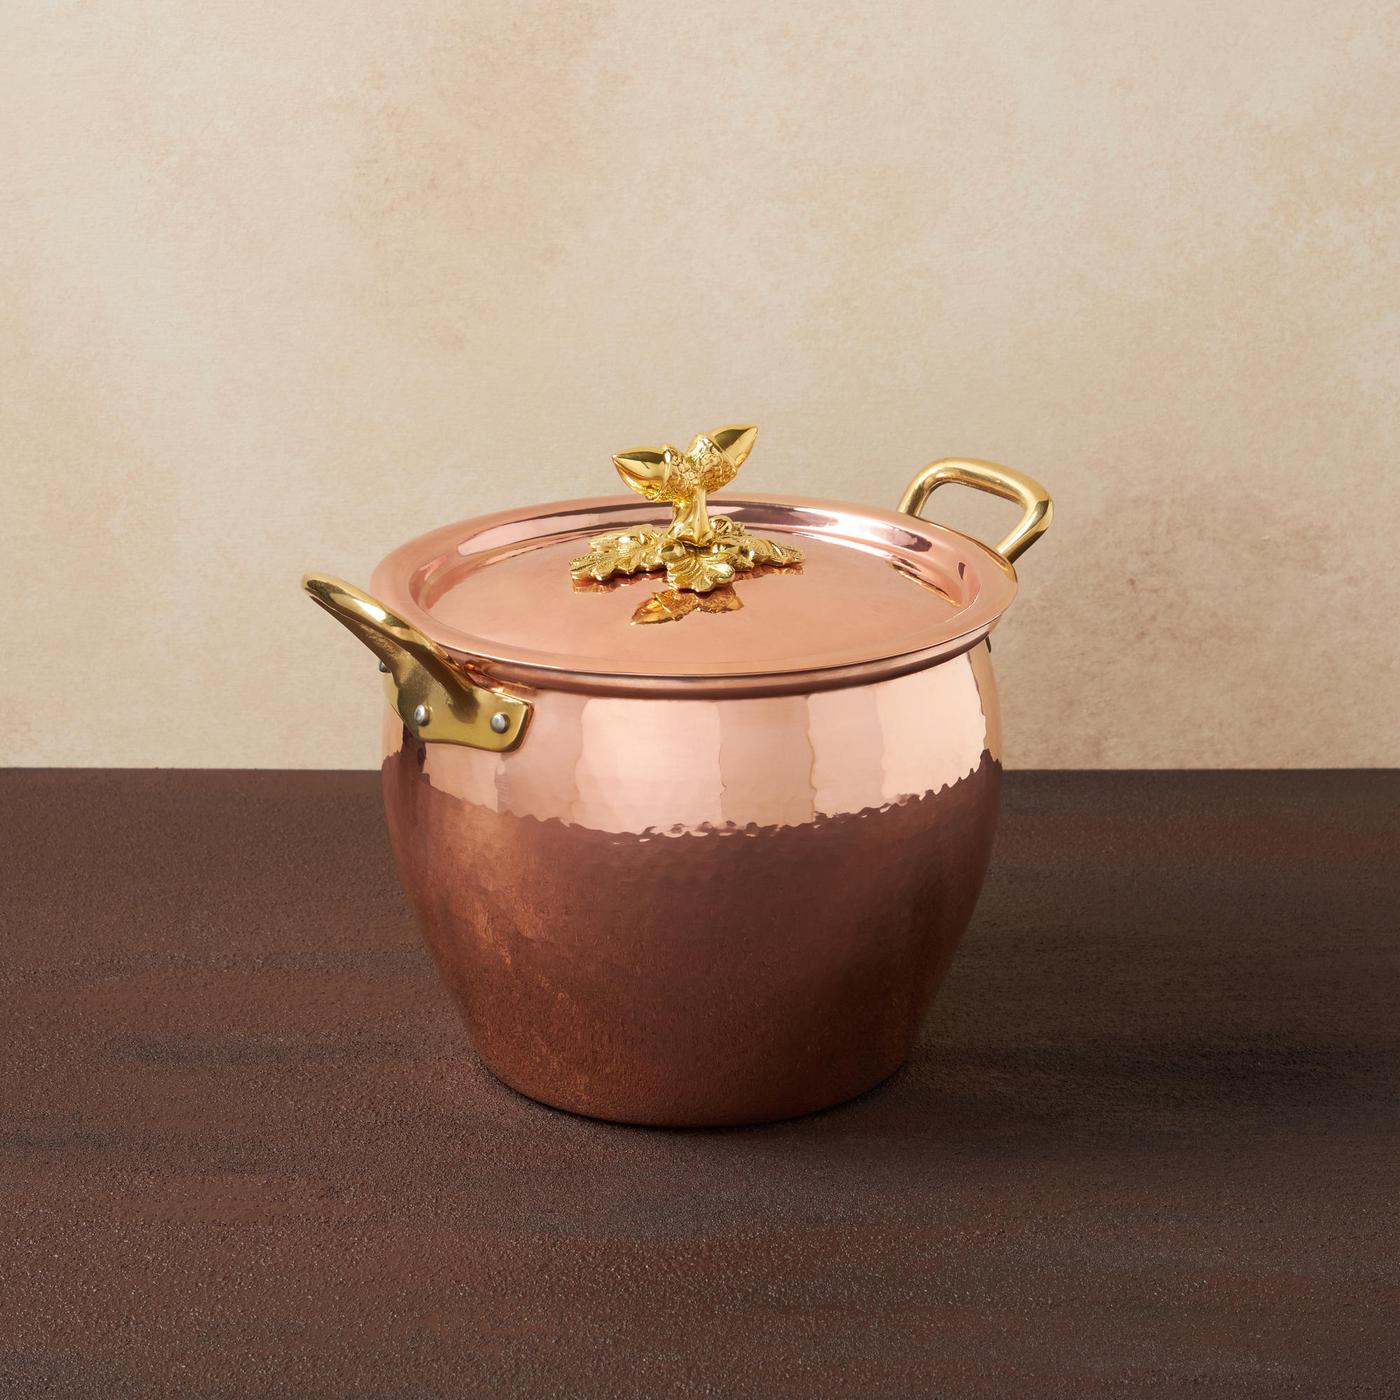 Ruffoni Historia Copper Covered Stockpot